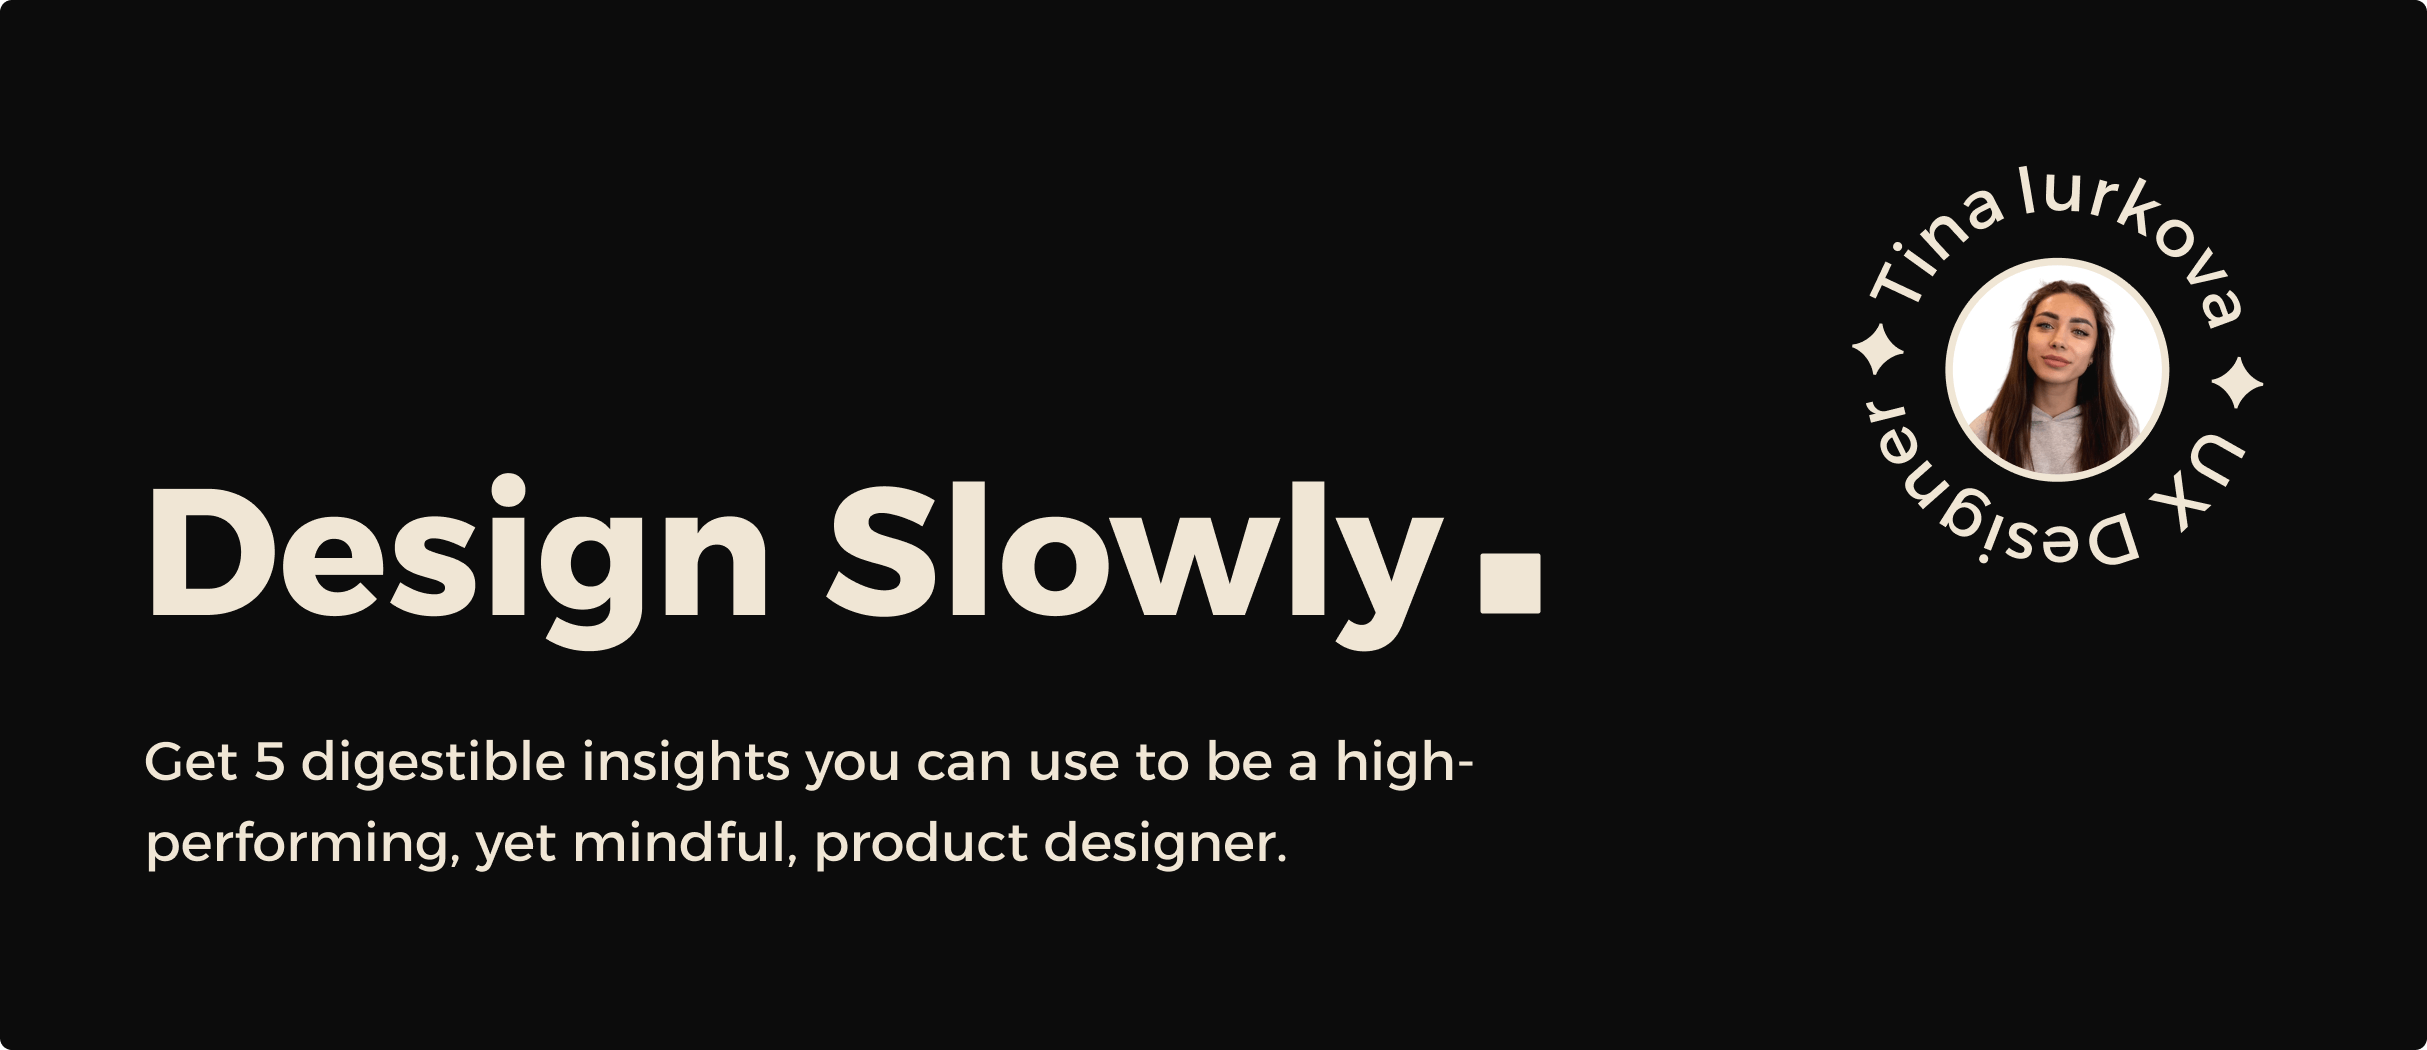 Design Slowly Newsletter media 1